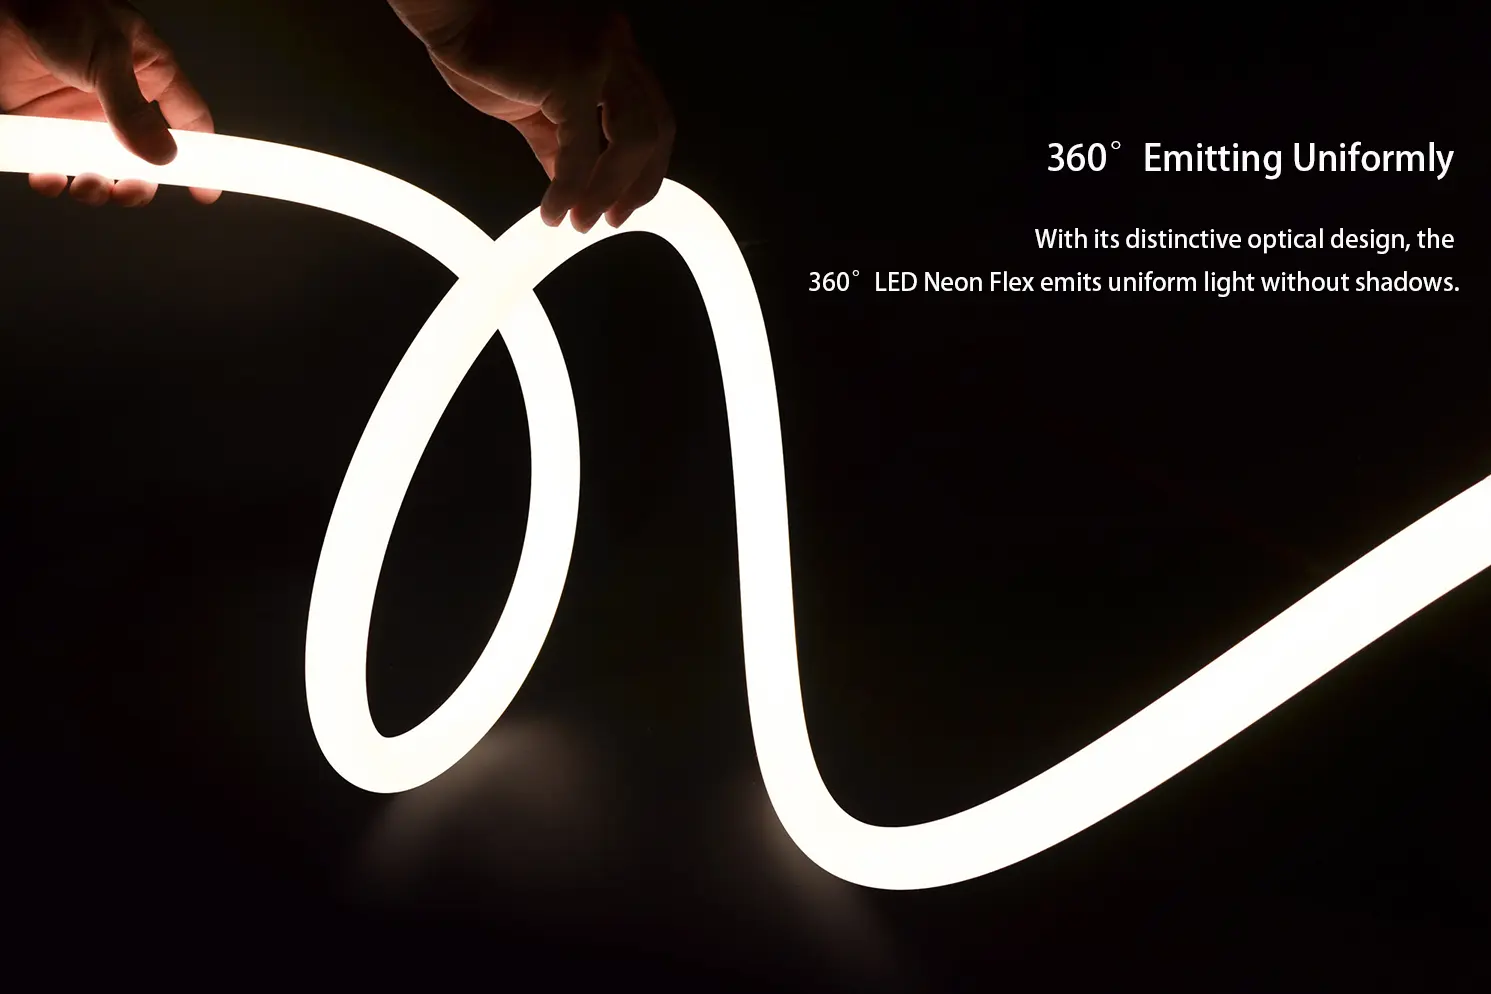 360° LED Neon Flex egyenletesen sugárzó 360° LED Neon Flex